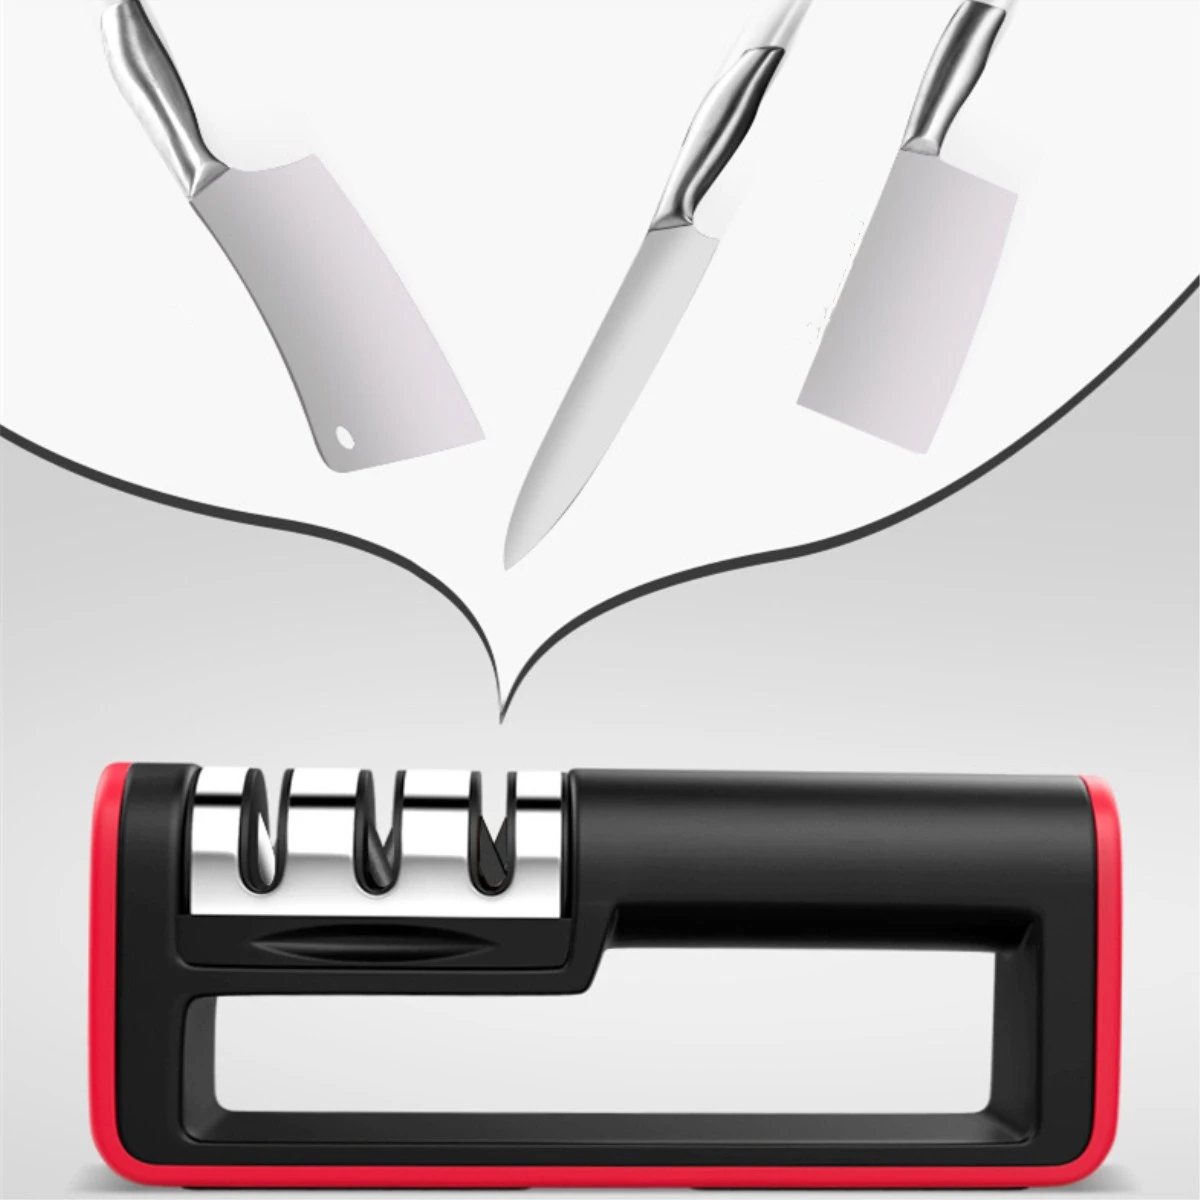 3 этапа Профессиональный Ножи точилка для ножей, точильный камень шлифовальный станок Вольфрам Сталь Карбид Алмазный Керамика Кухня точилка Инструменты